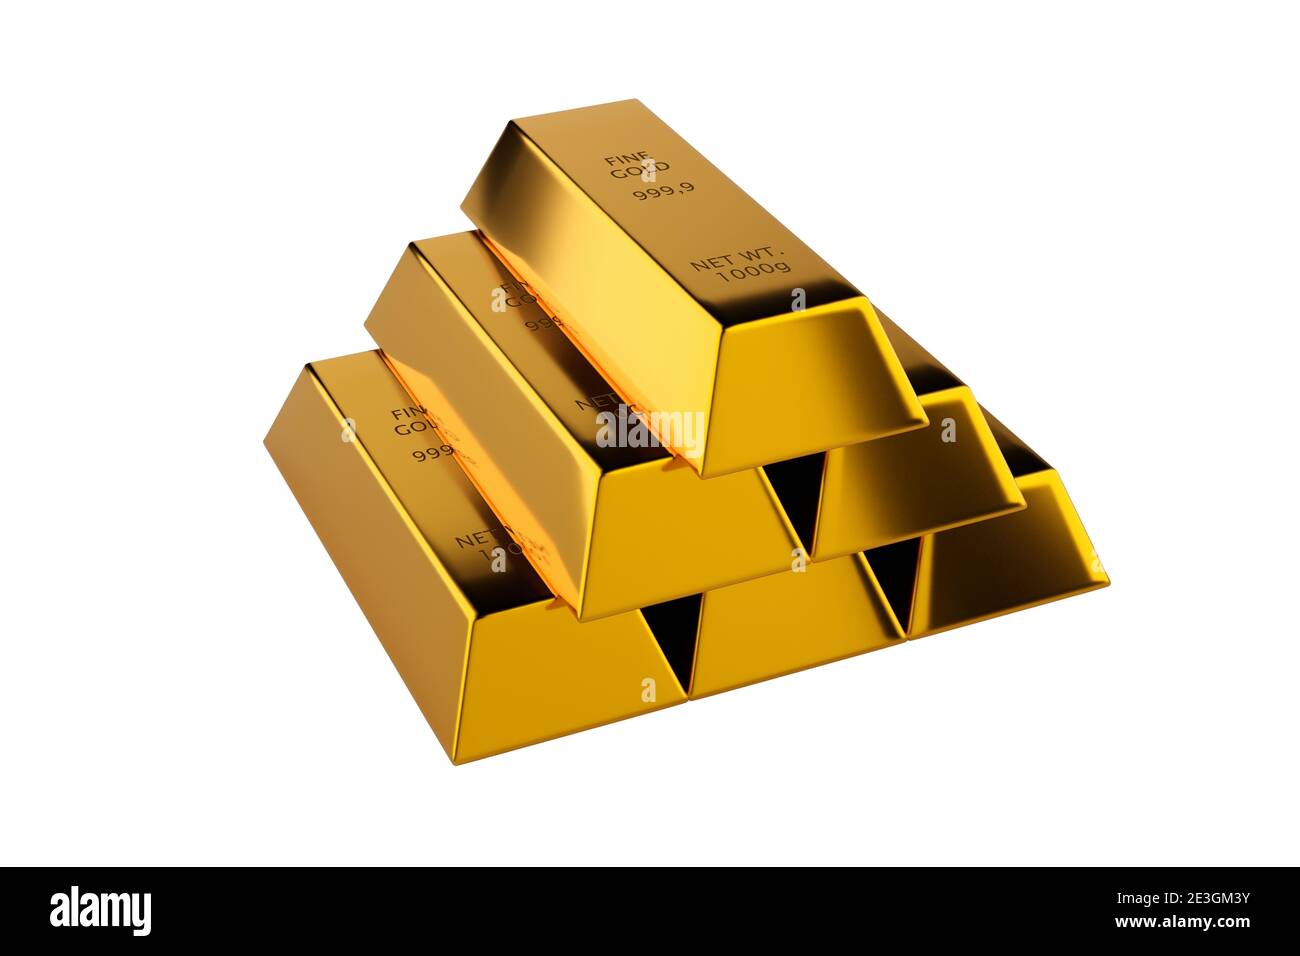 Glänzende Goldbarren oder Bars Pyramide über weißem Hintergrund - Edelmetall oder Geld-Investment-Konzept, 3D-Illustration Stockfoto